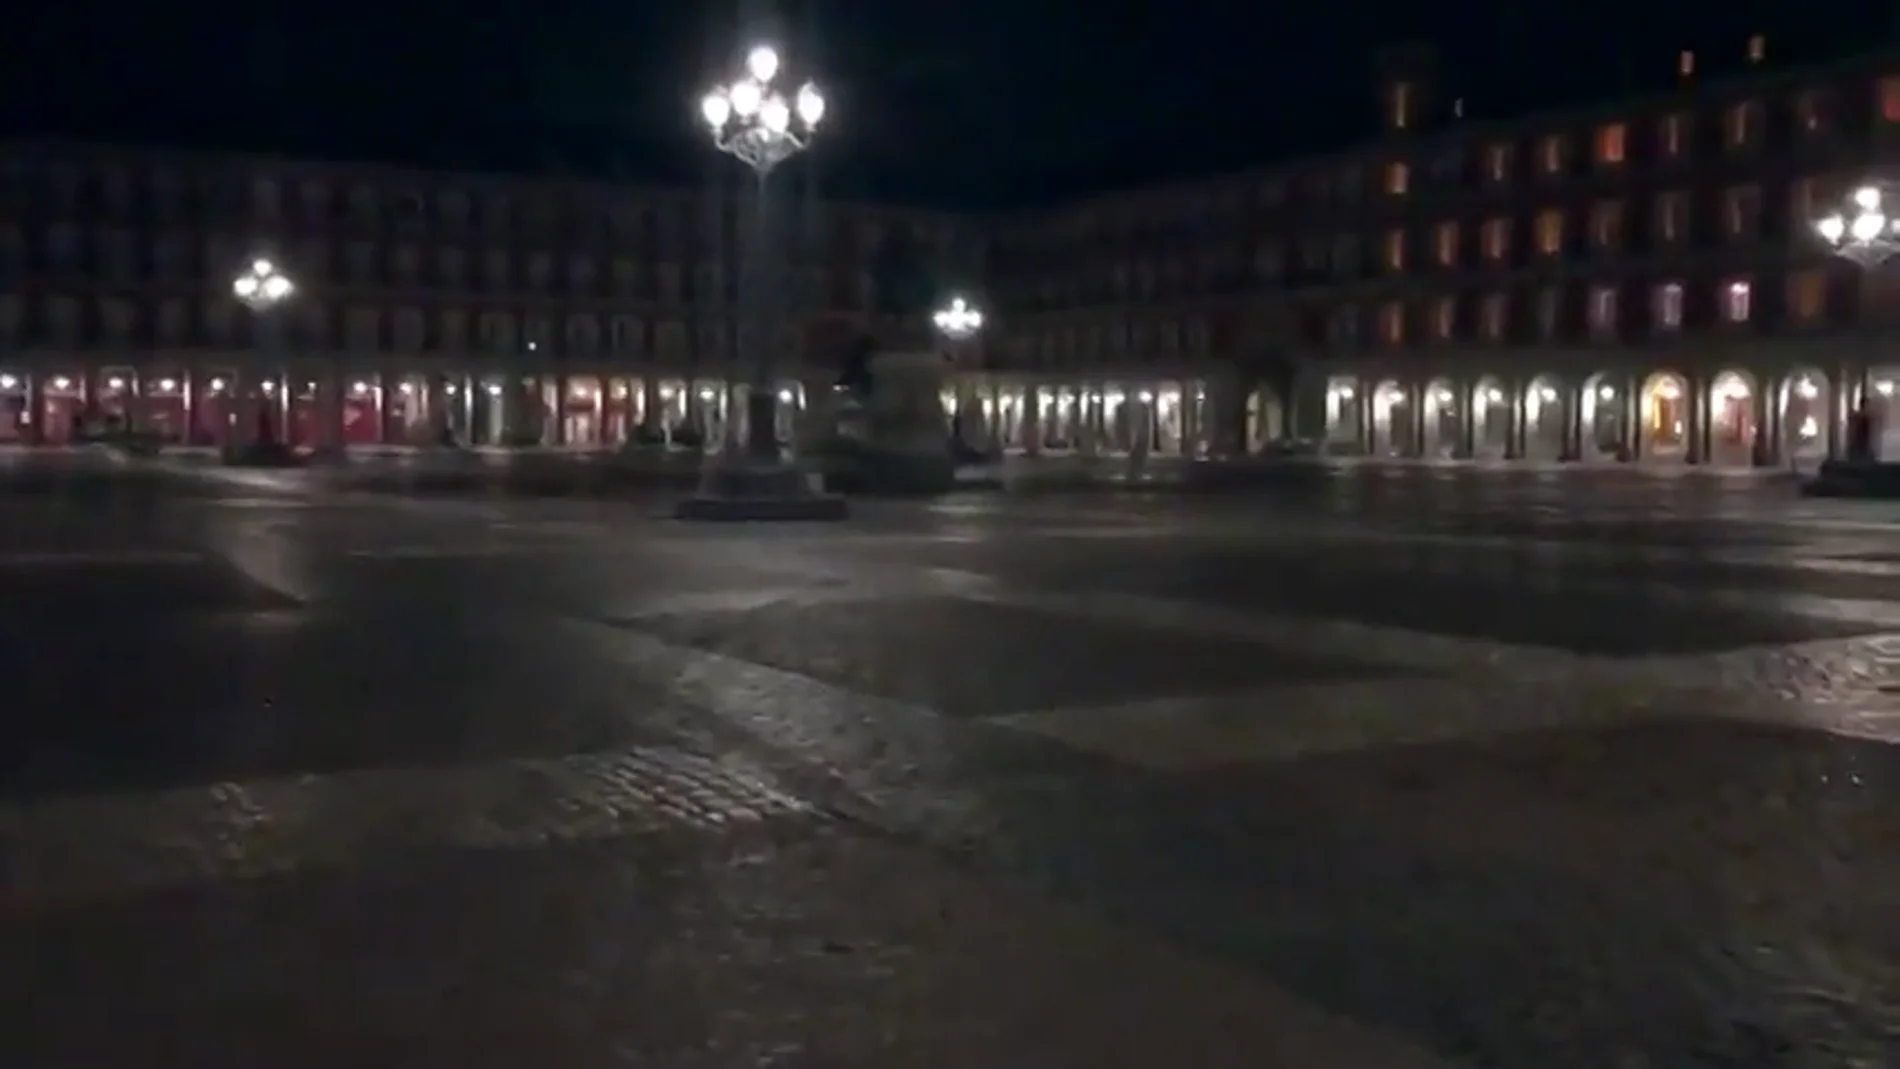  Madrid, desierta y sumida en el silencio: las impactantes imágenes de una ciudad aislada por el coronavirus